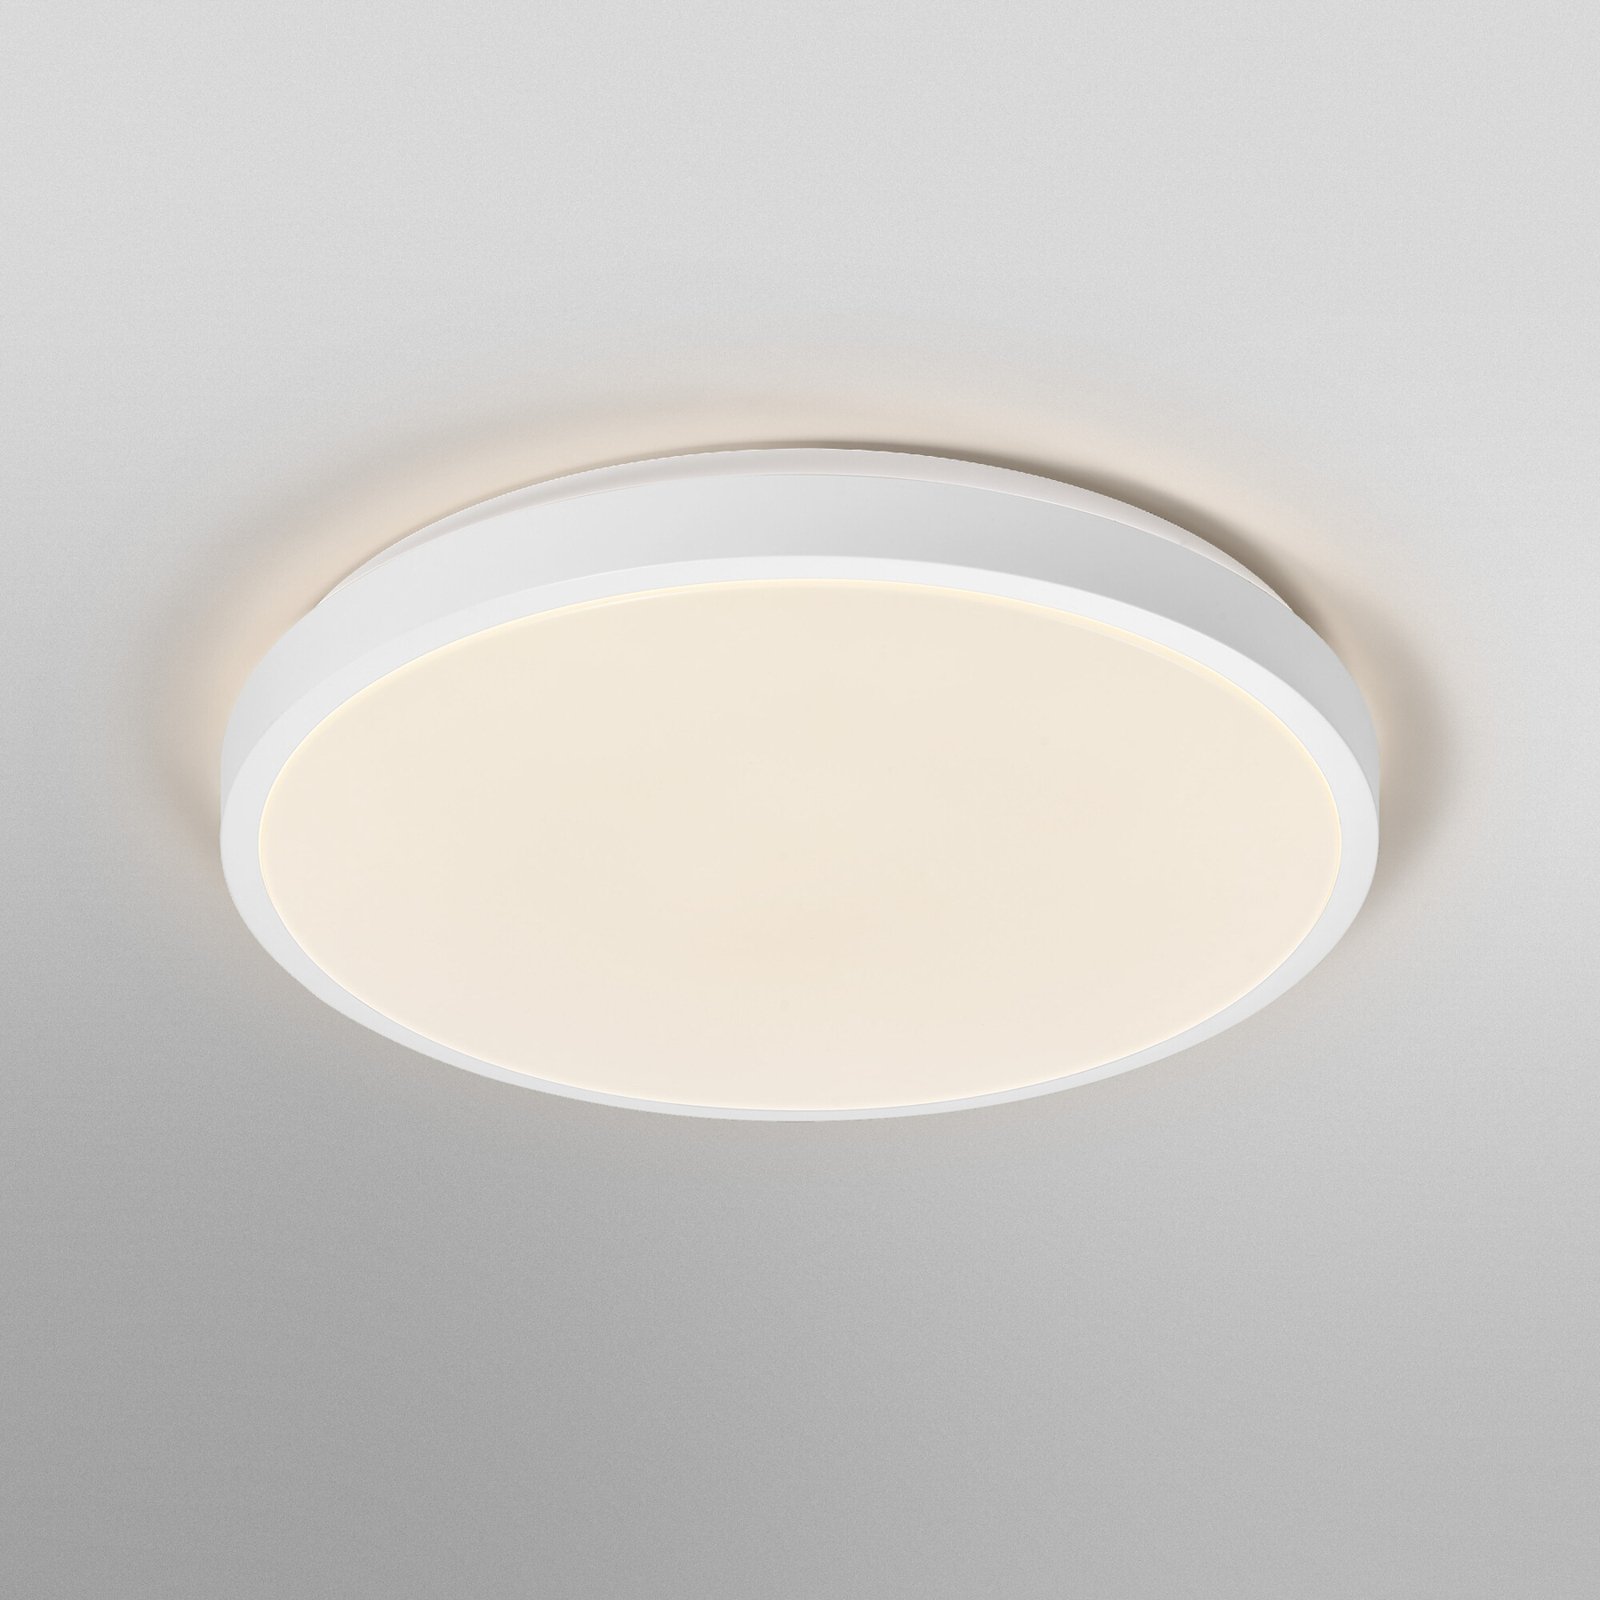 Ledvance Orbis London ceiling light Ø 48cm white